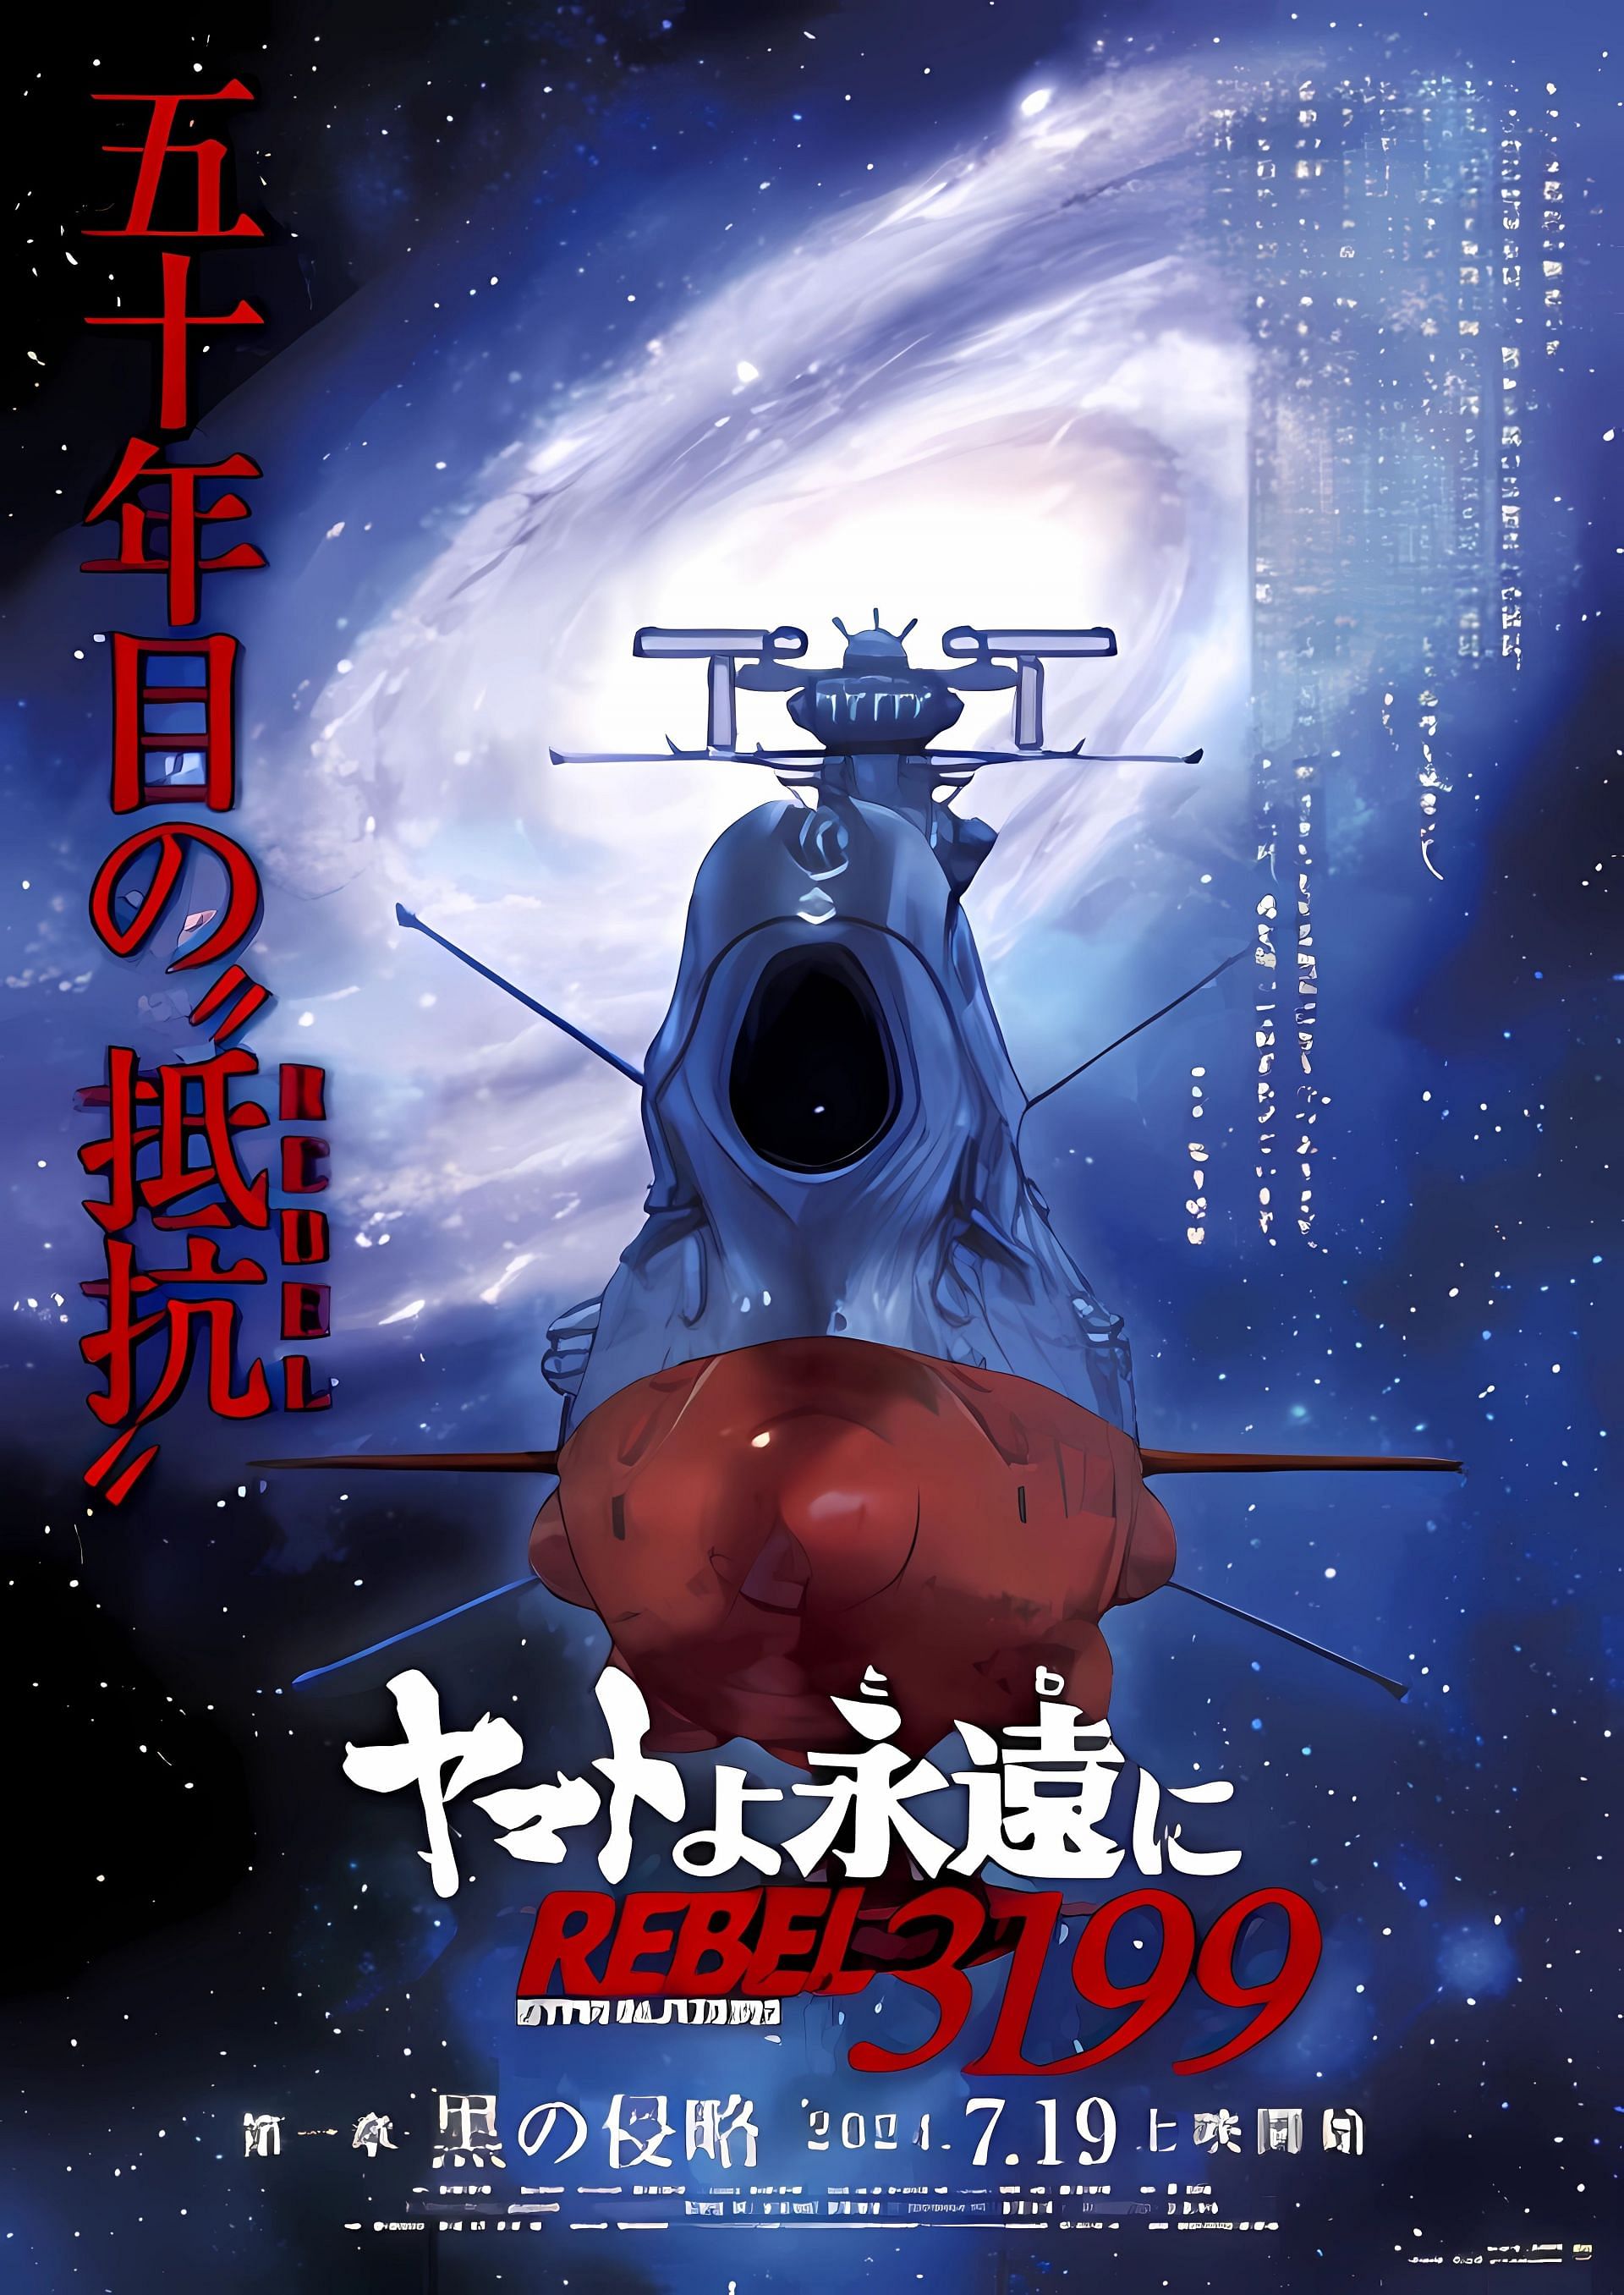 Yamato yo, Towa ni: Rebel 3199 main poster (Image via studio MOTHER)